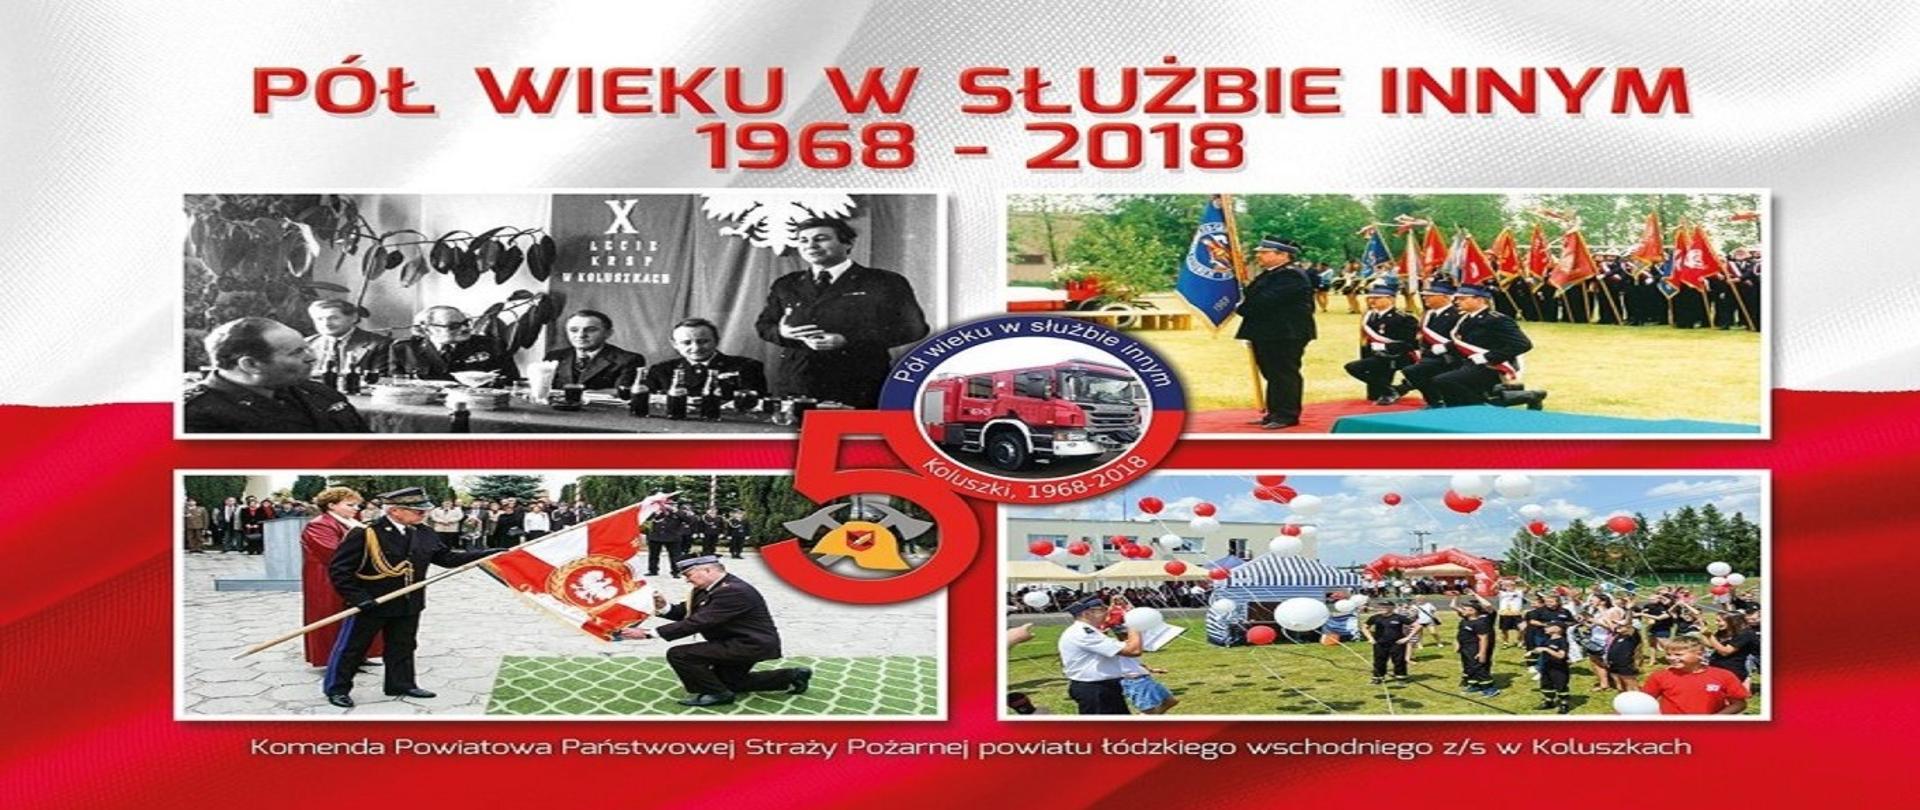 Na zdjęciu okładka publikacji z okazji jubileuszu 50 rocznicy zawodowego pożarnictwa w Koluszkach pt. "Pół Wieku w Służbie Innym 1968 - 2018" 